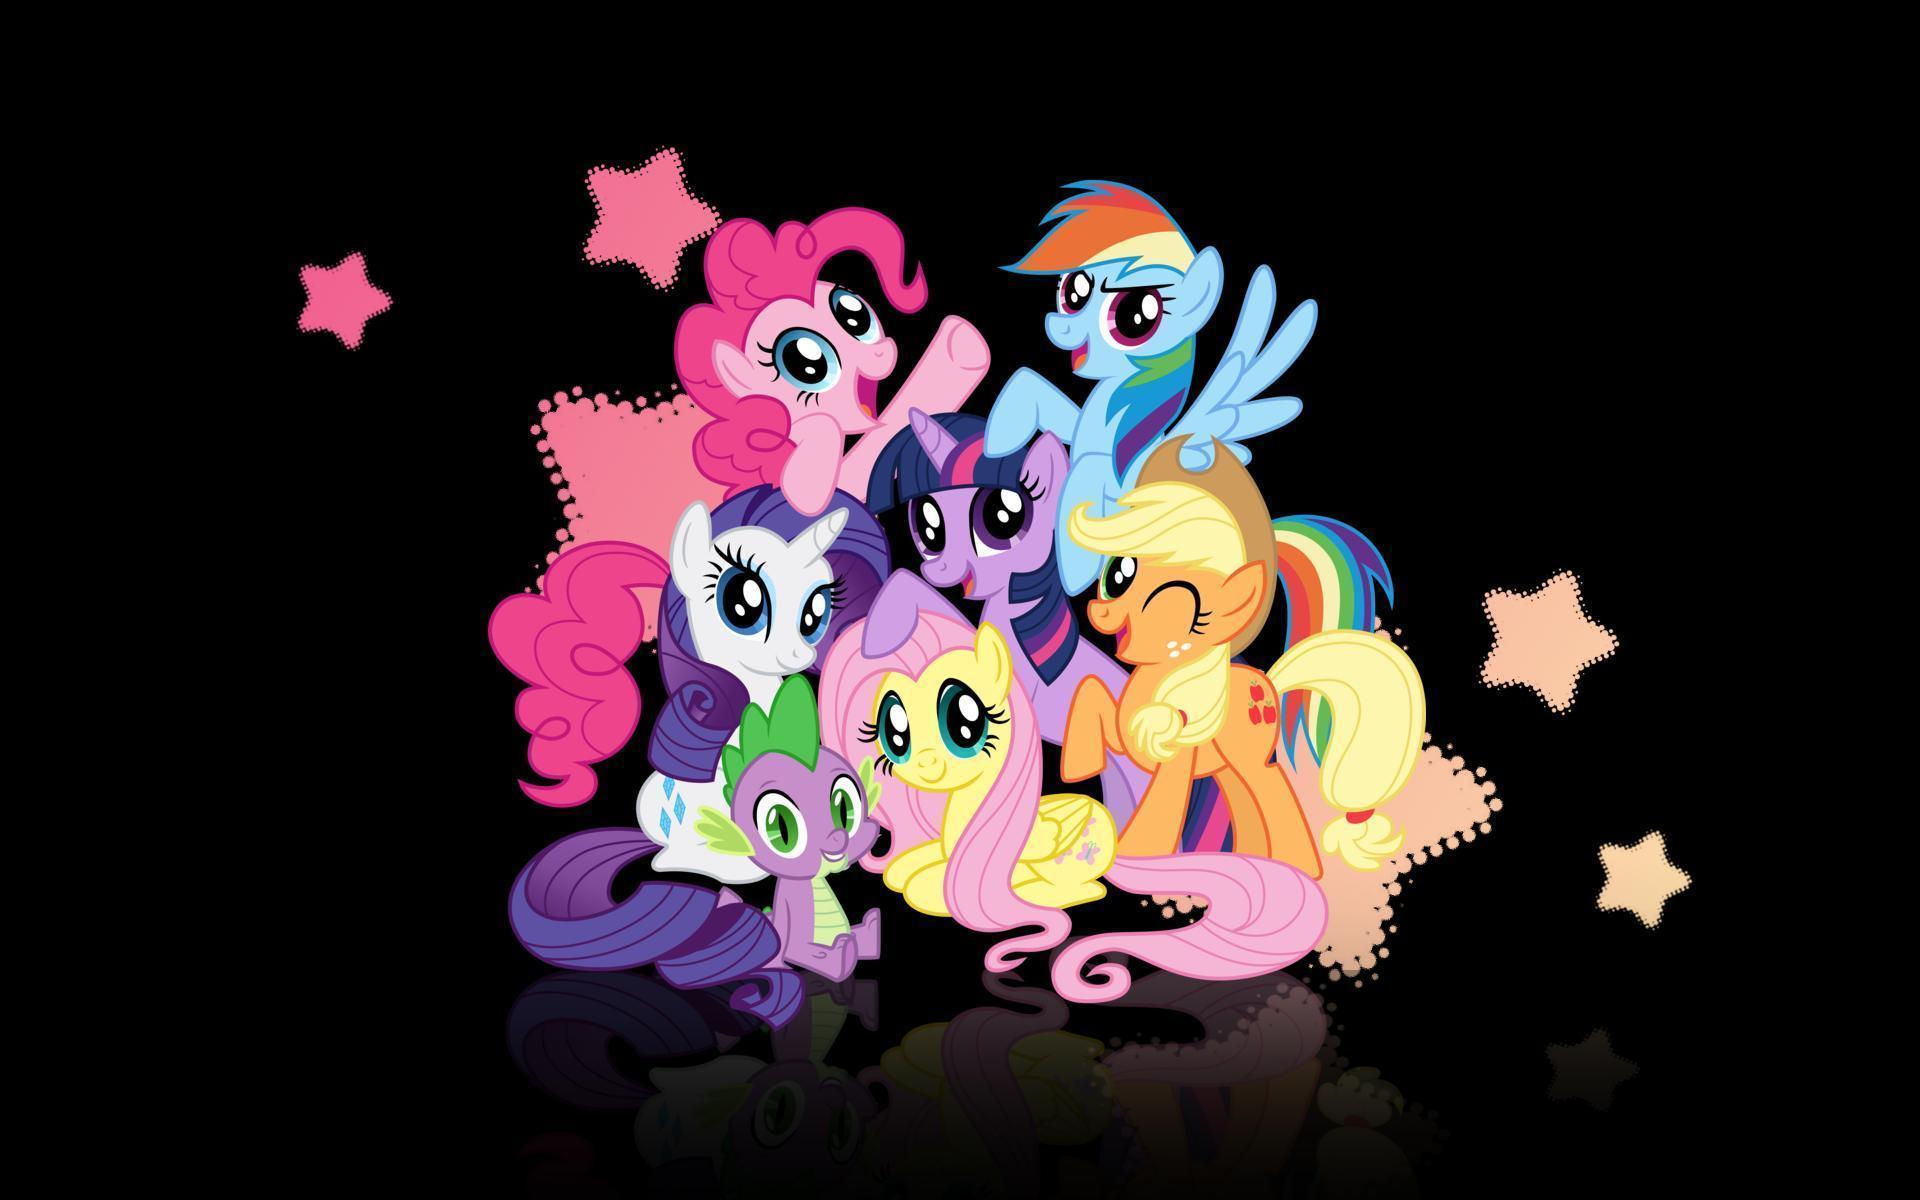 My Little Pony HD Wallpaper